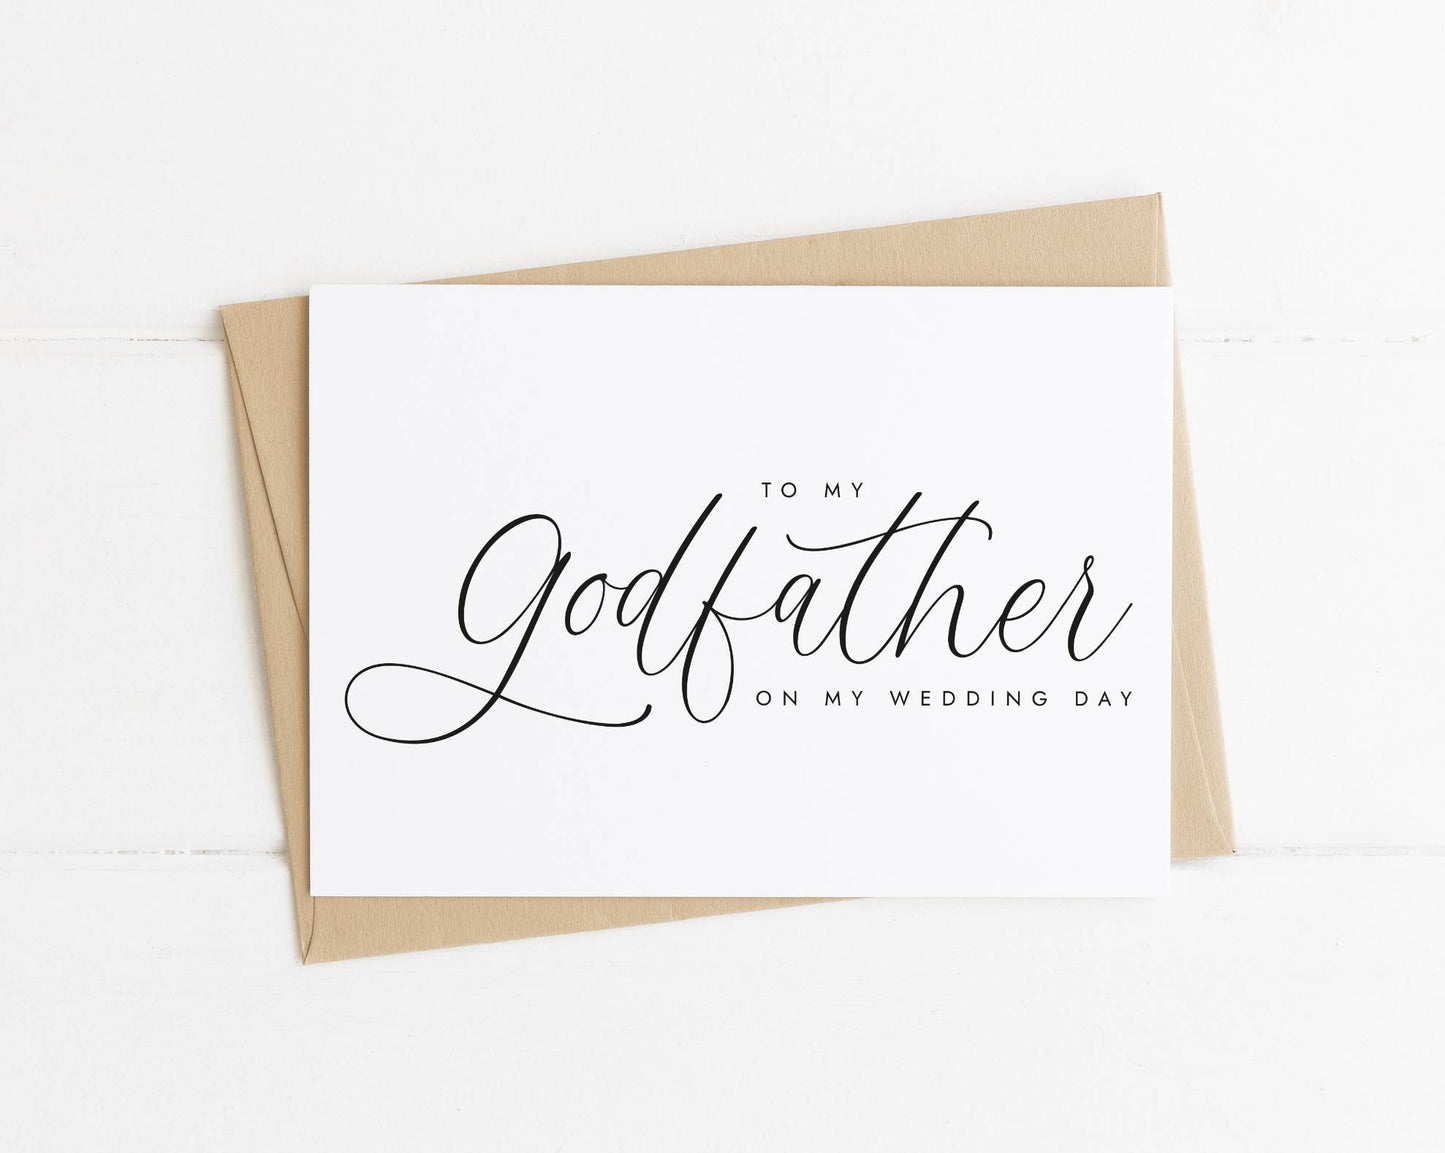 To My Godfather On My Wedding Day Card